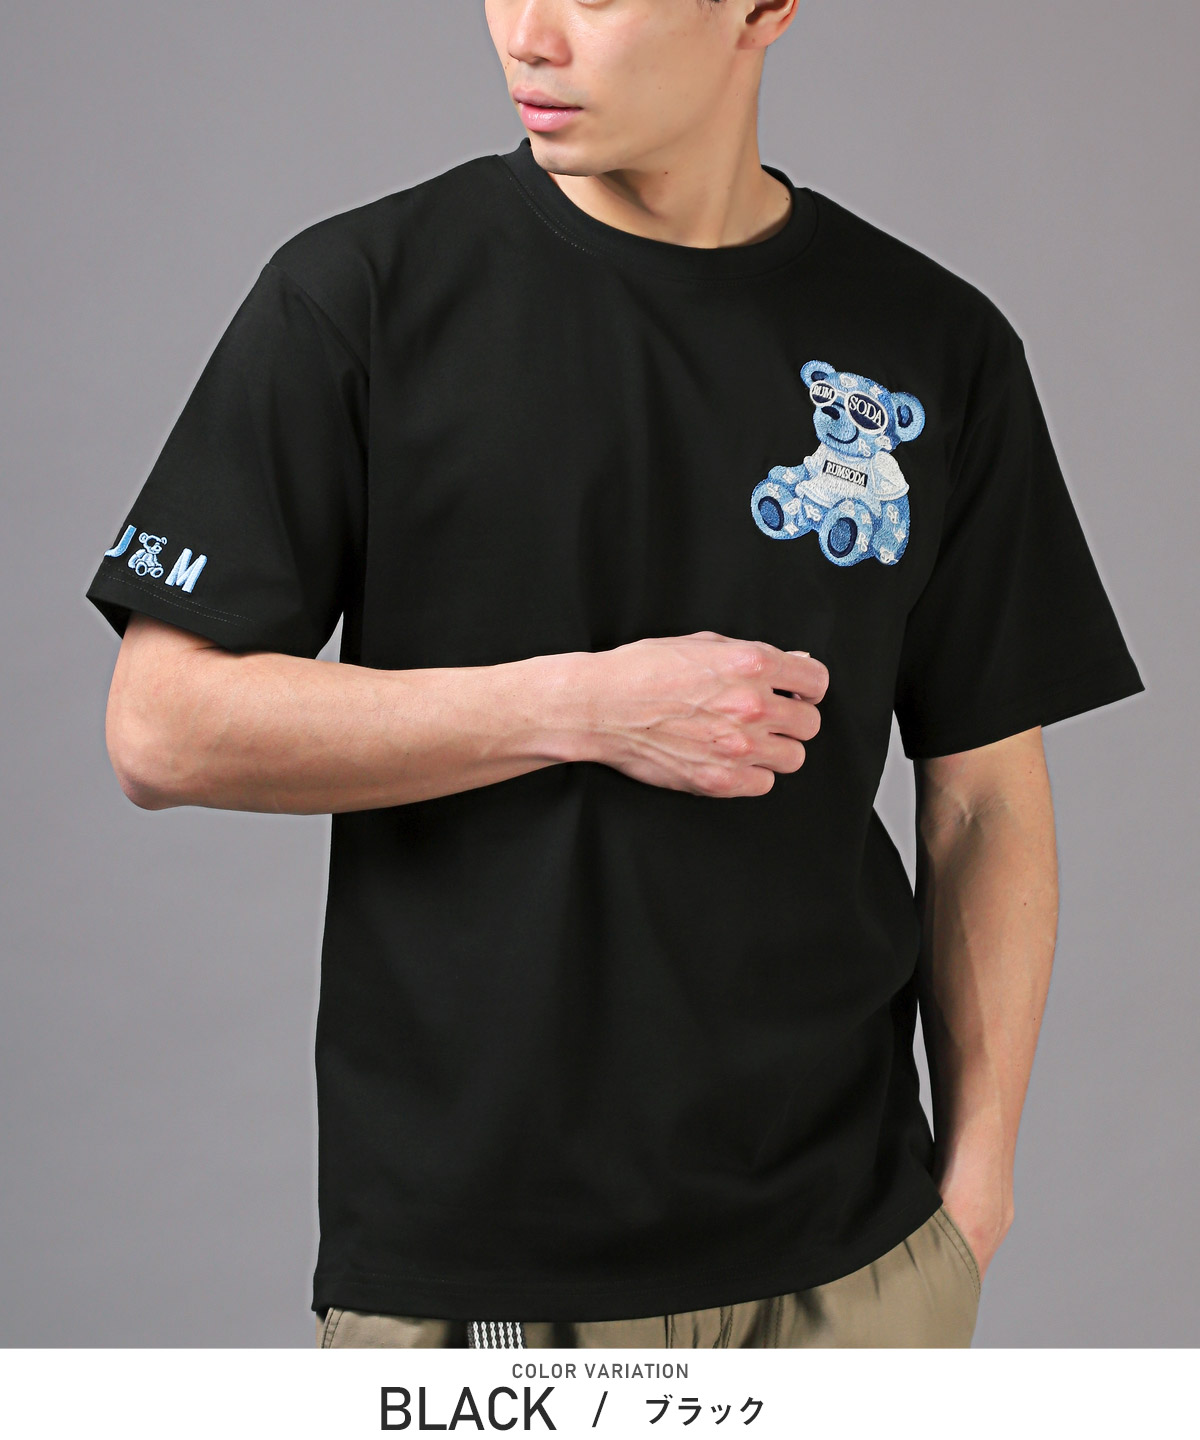 Tシャツ メンズ 半袖 トップス ベア 刺繍 ロゴ オーバーサイズ テディベア クルーネック 白 黒